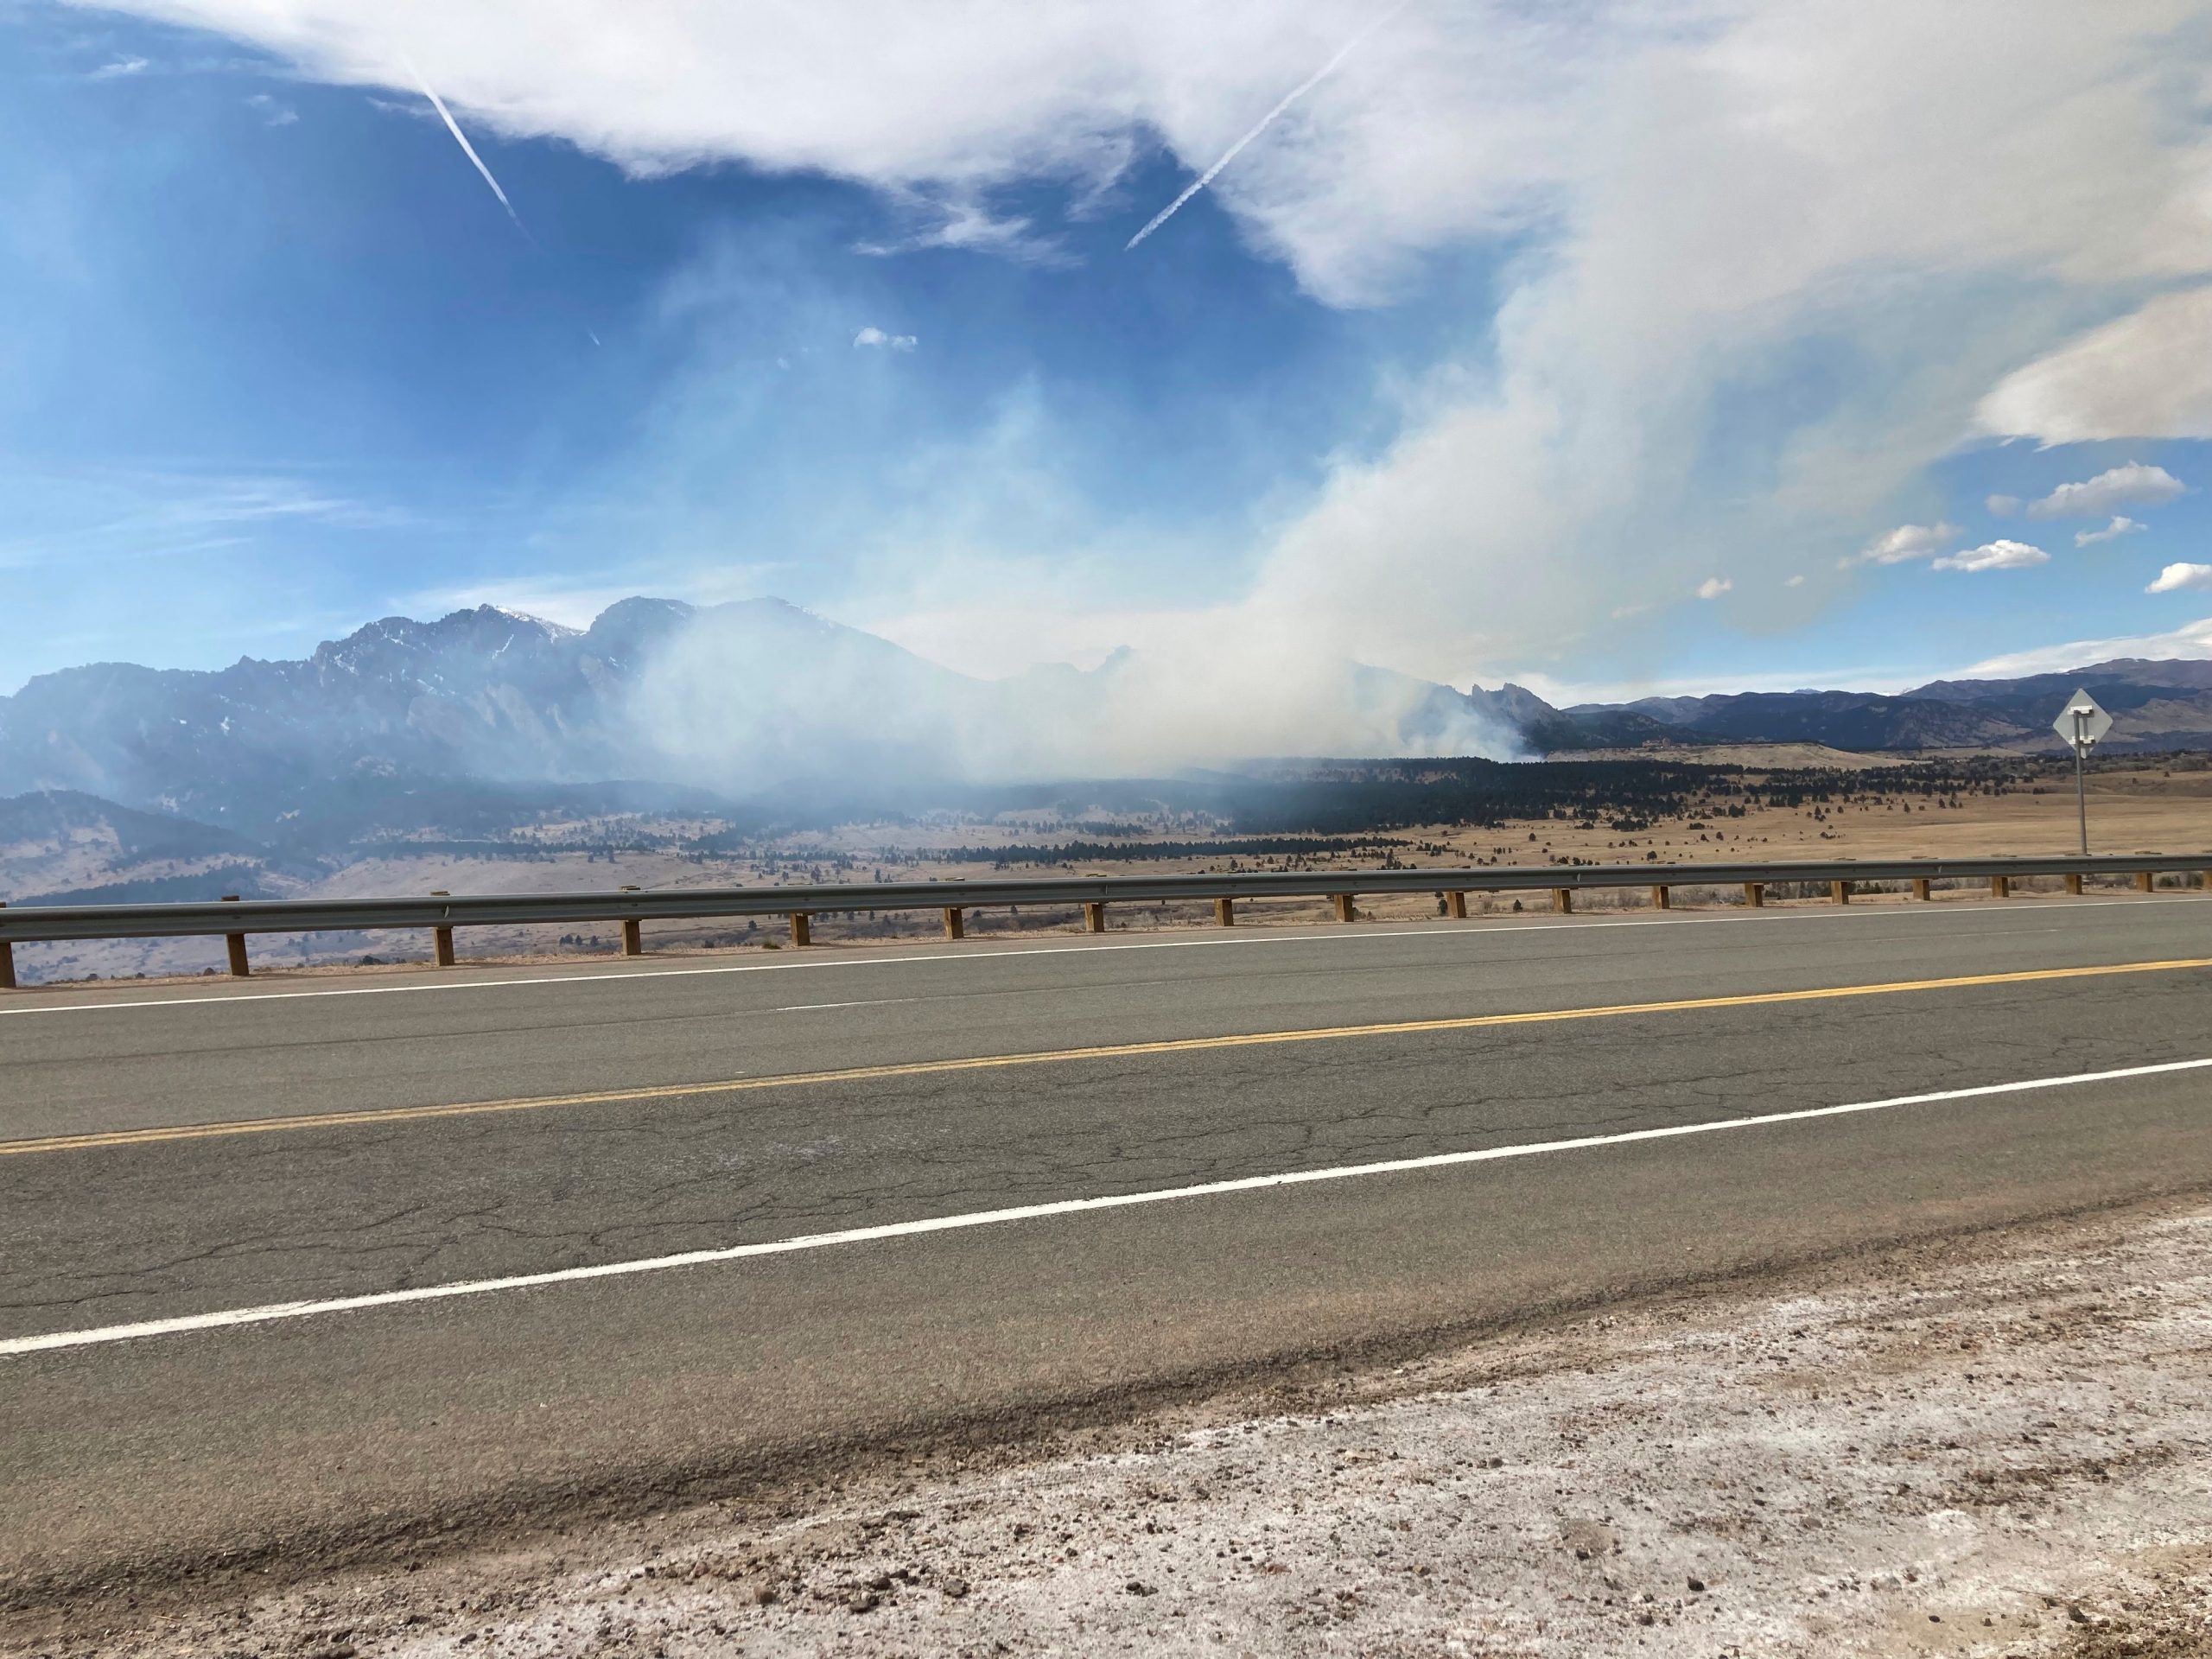 Colorado wildfire: 19,000 people asked to evacuate as blaze spreads